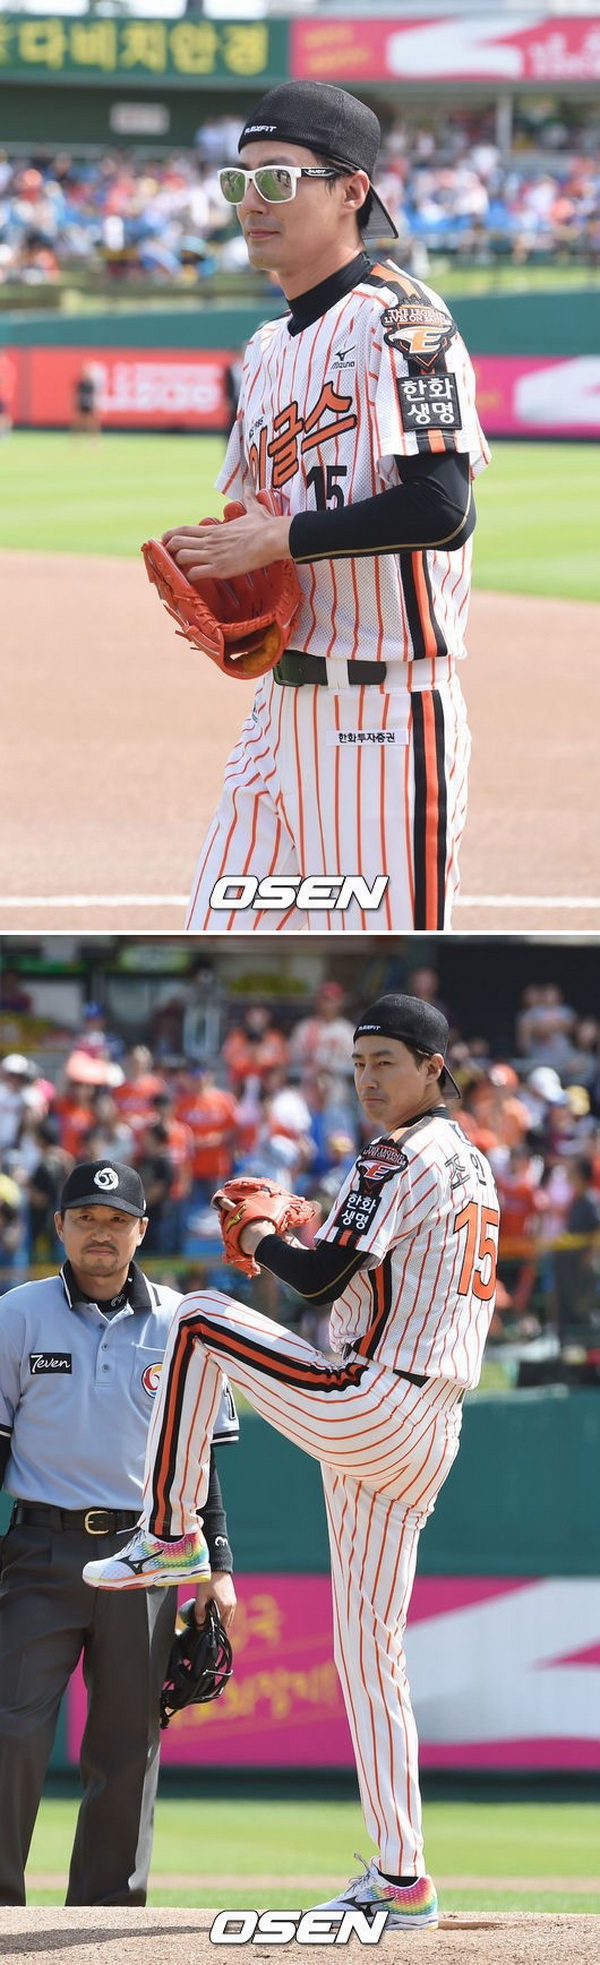 โจ อินซอง นักเบสบอล ที่หล่อที่สุดในเกาหลี! 